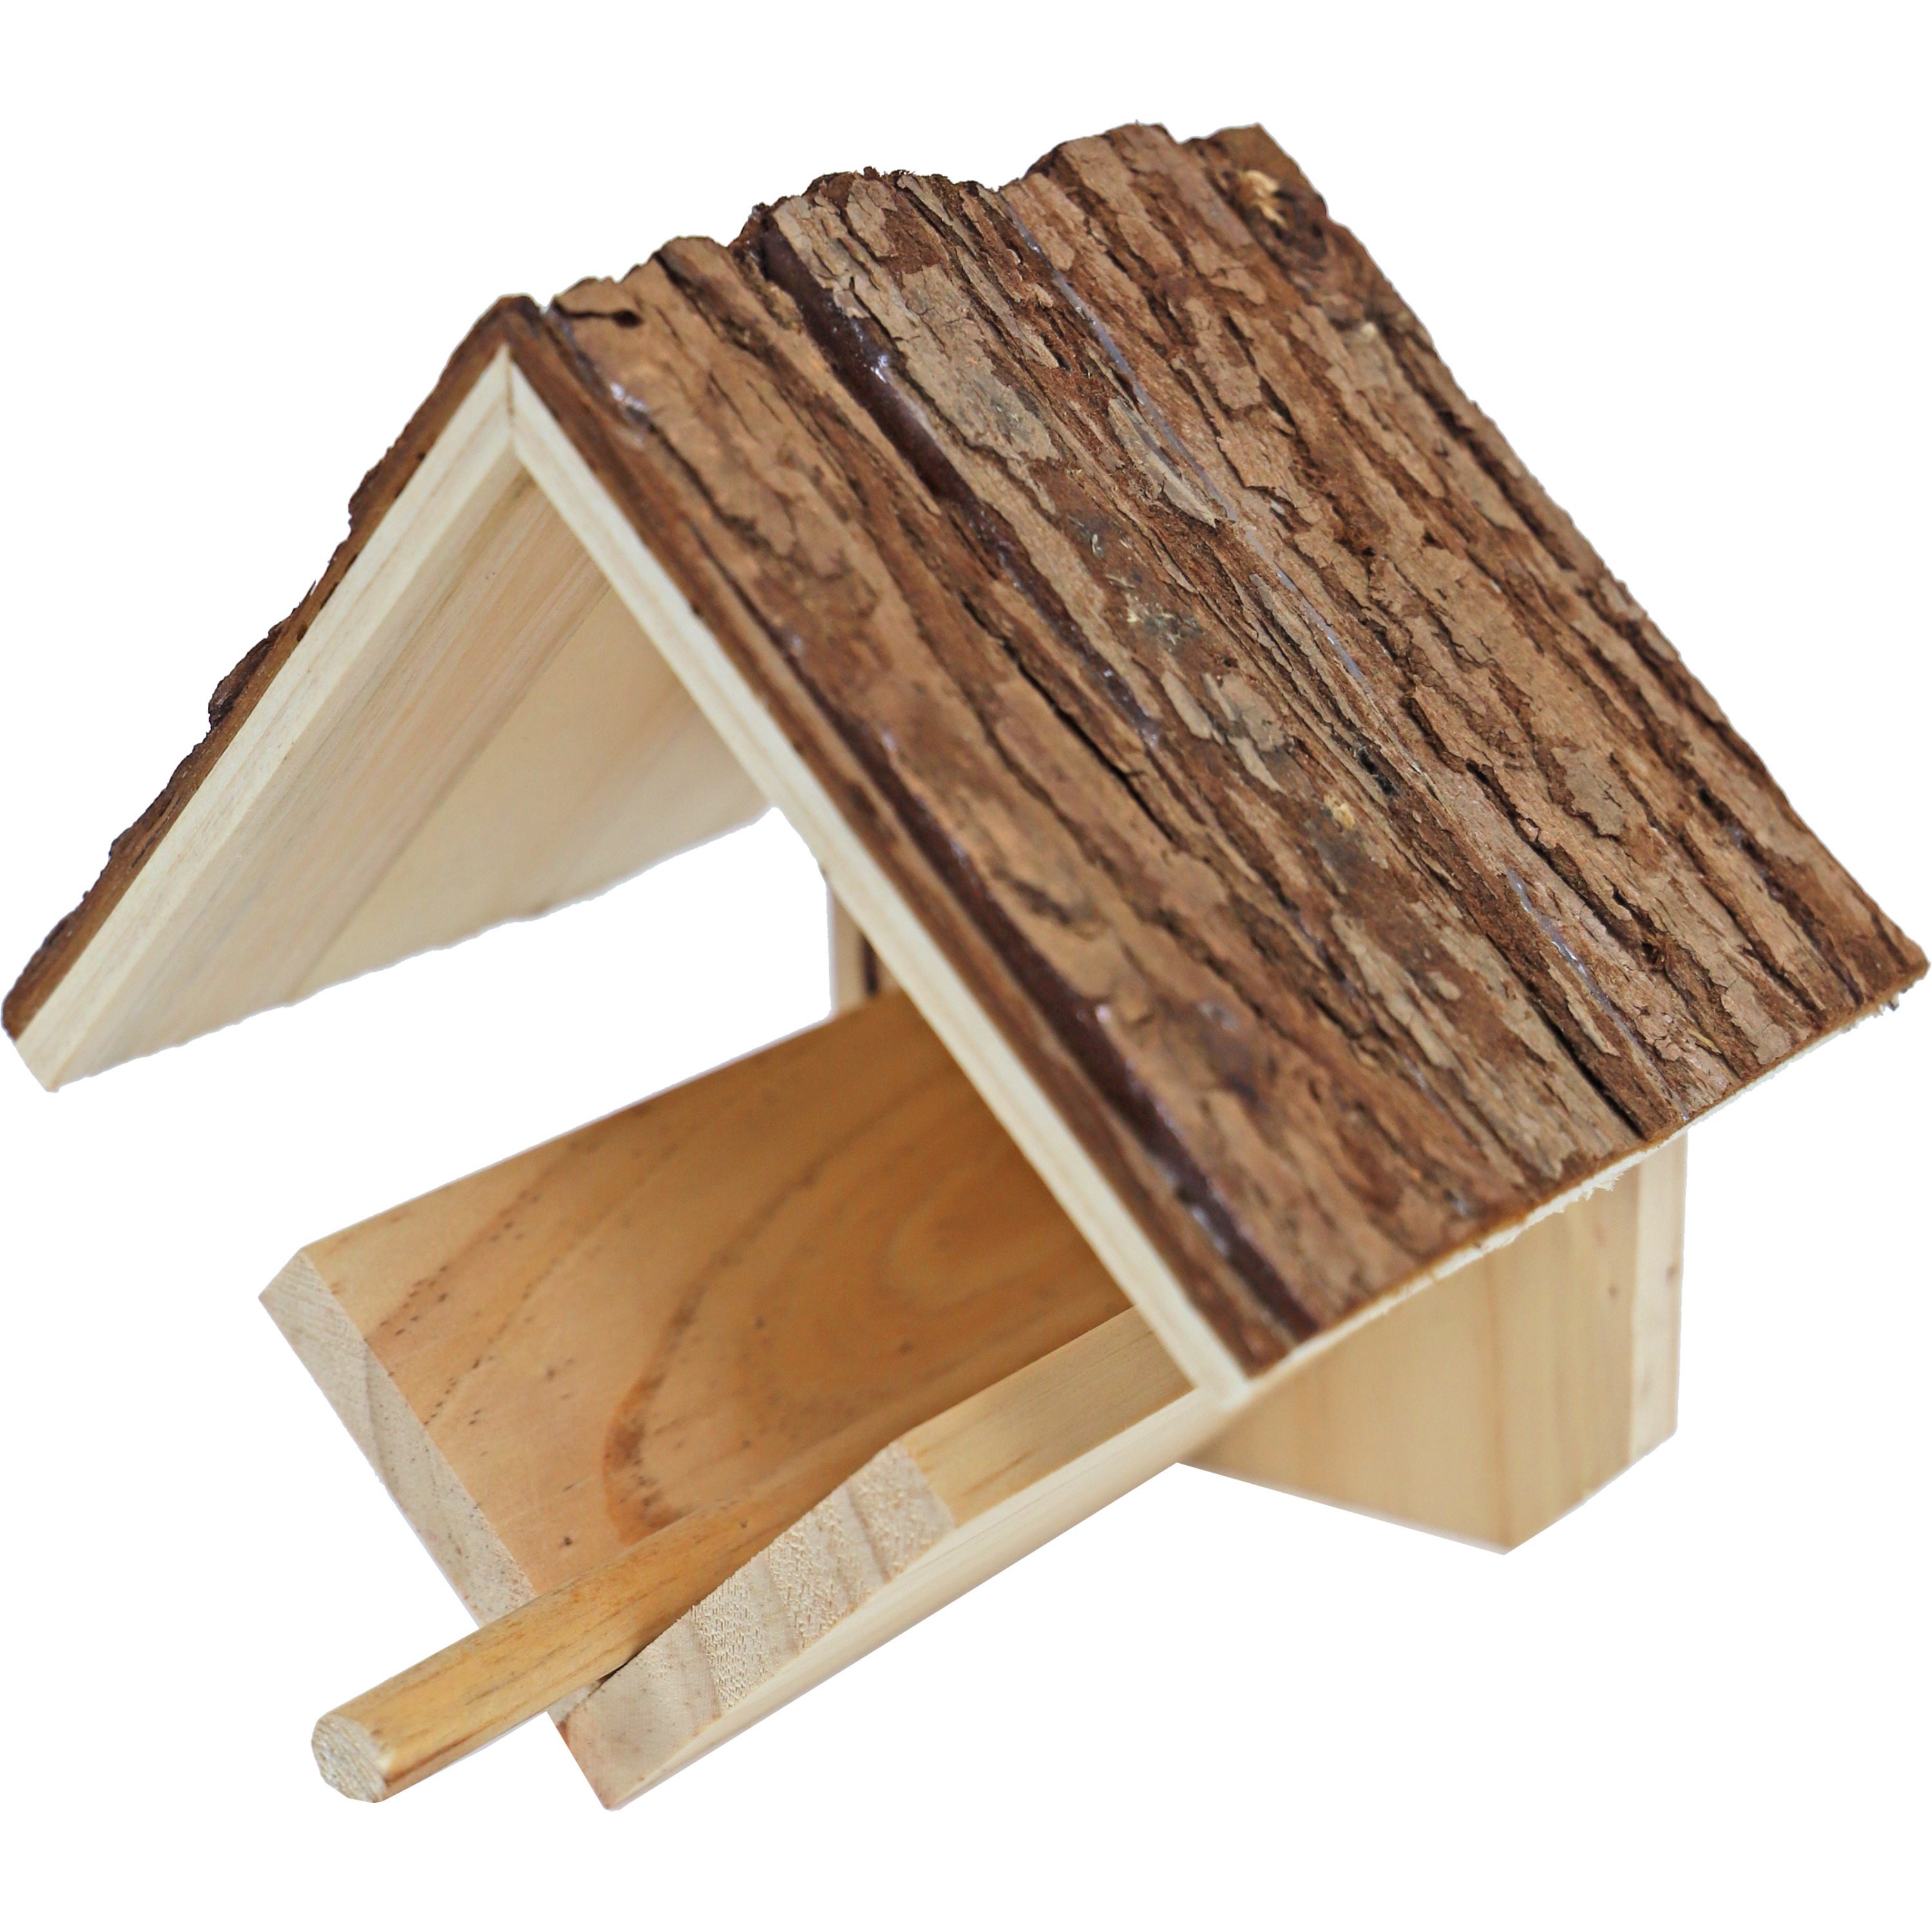 Vogelhuisje-voederhuisje-pindakaashuisje hout met dak van boomschors 16 cm